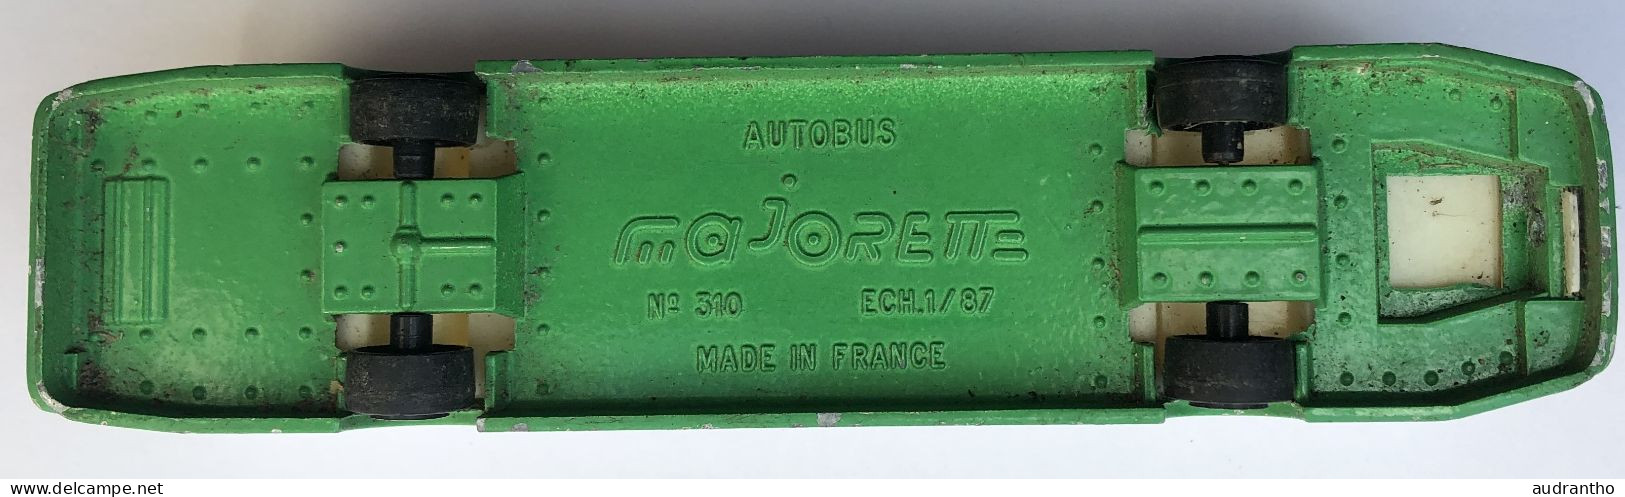 Vintage - Majorette - Autobus - Concorde - Champs Elysées - Modèle N° 310 à L’échelle 1/87 - Escala 1:87